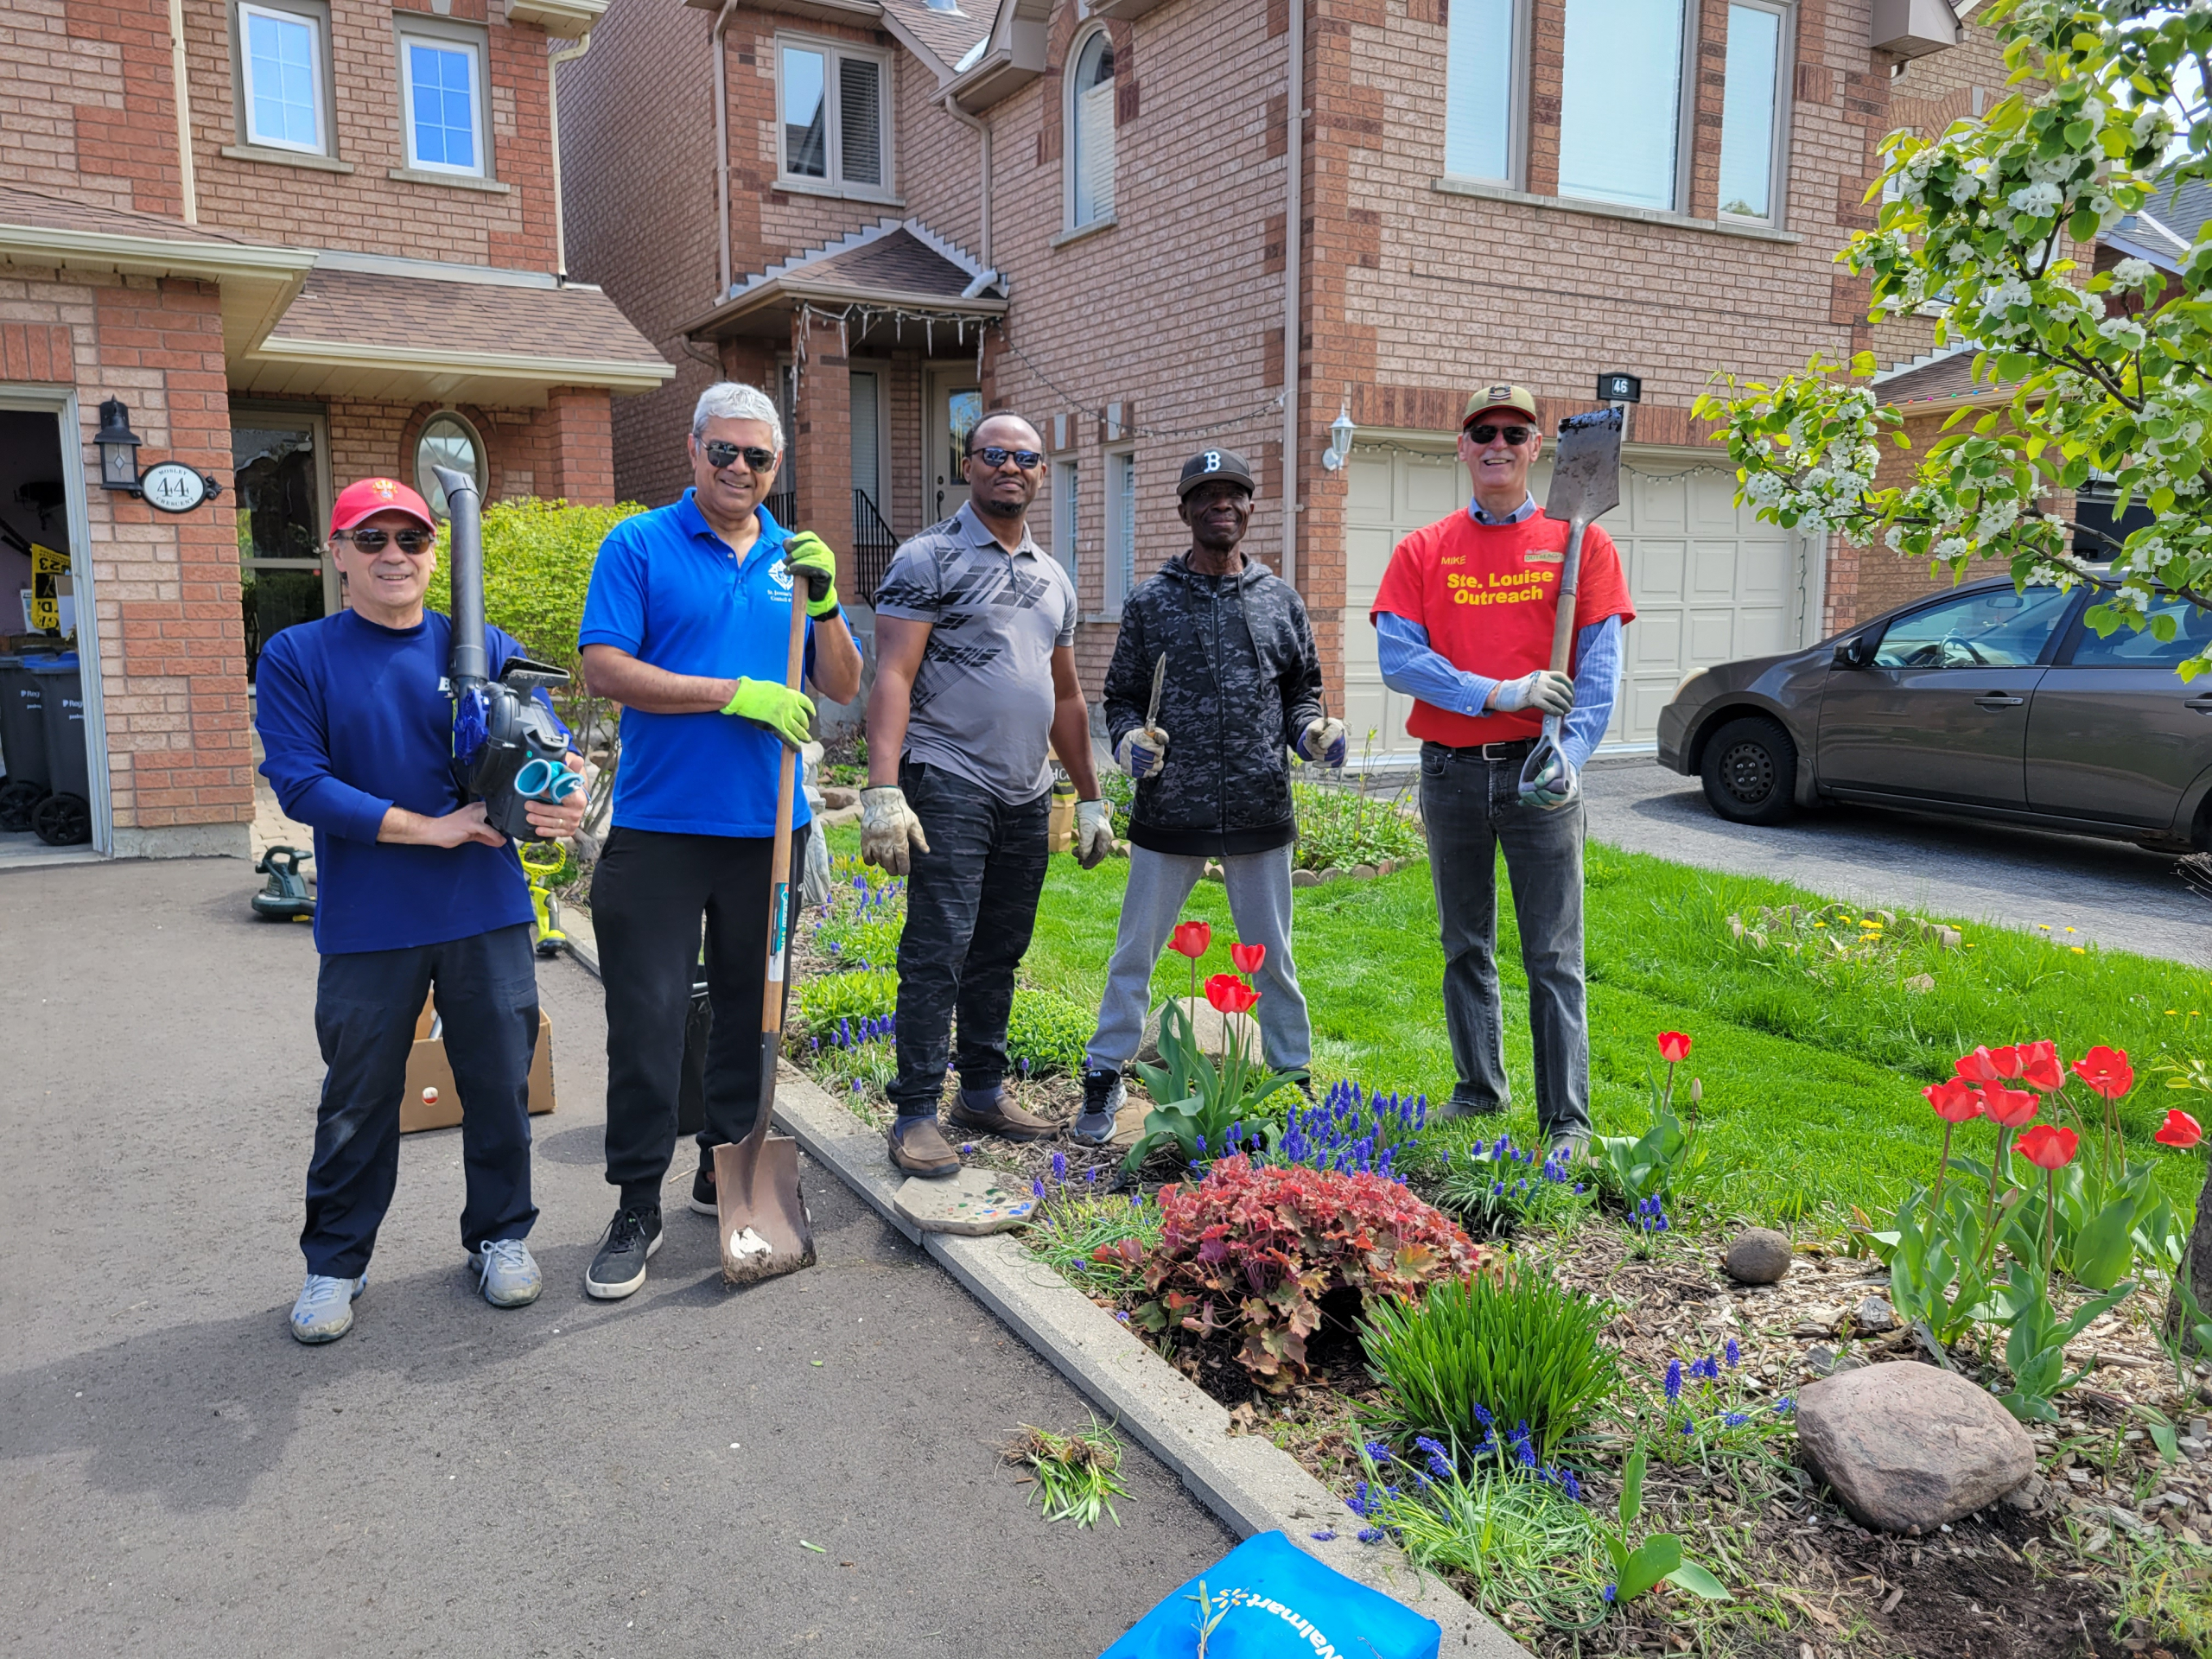 KofC Ontario Council 17394 Yard Clean Up Fund Raiser